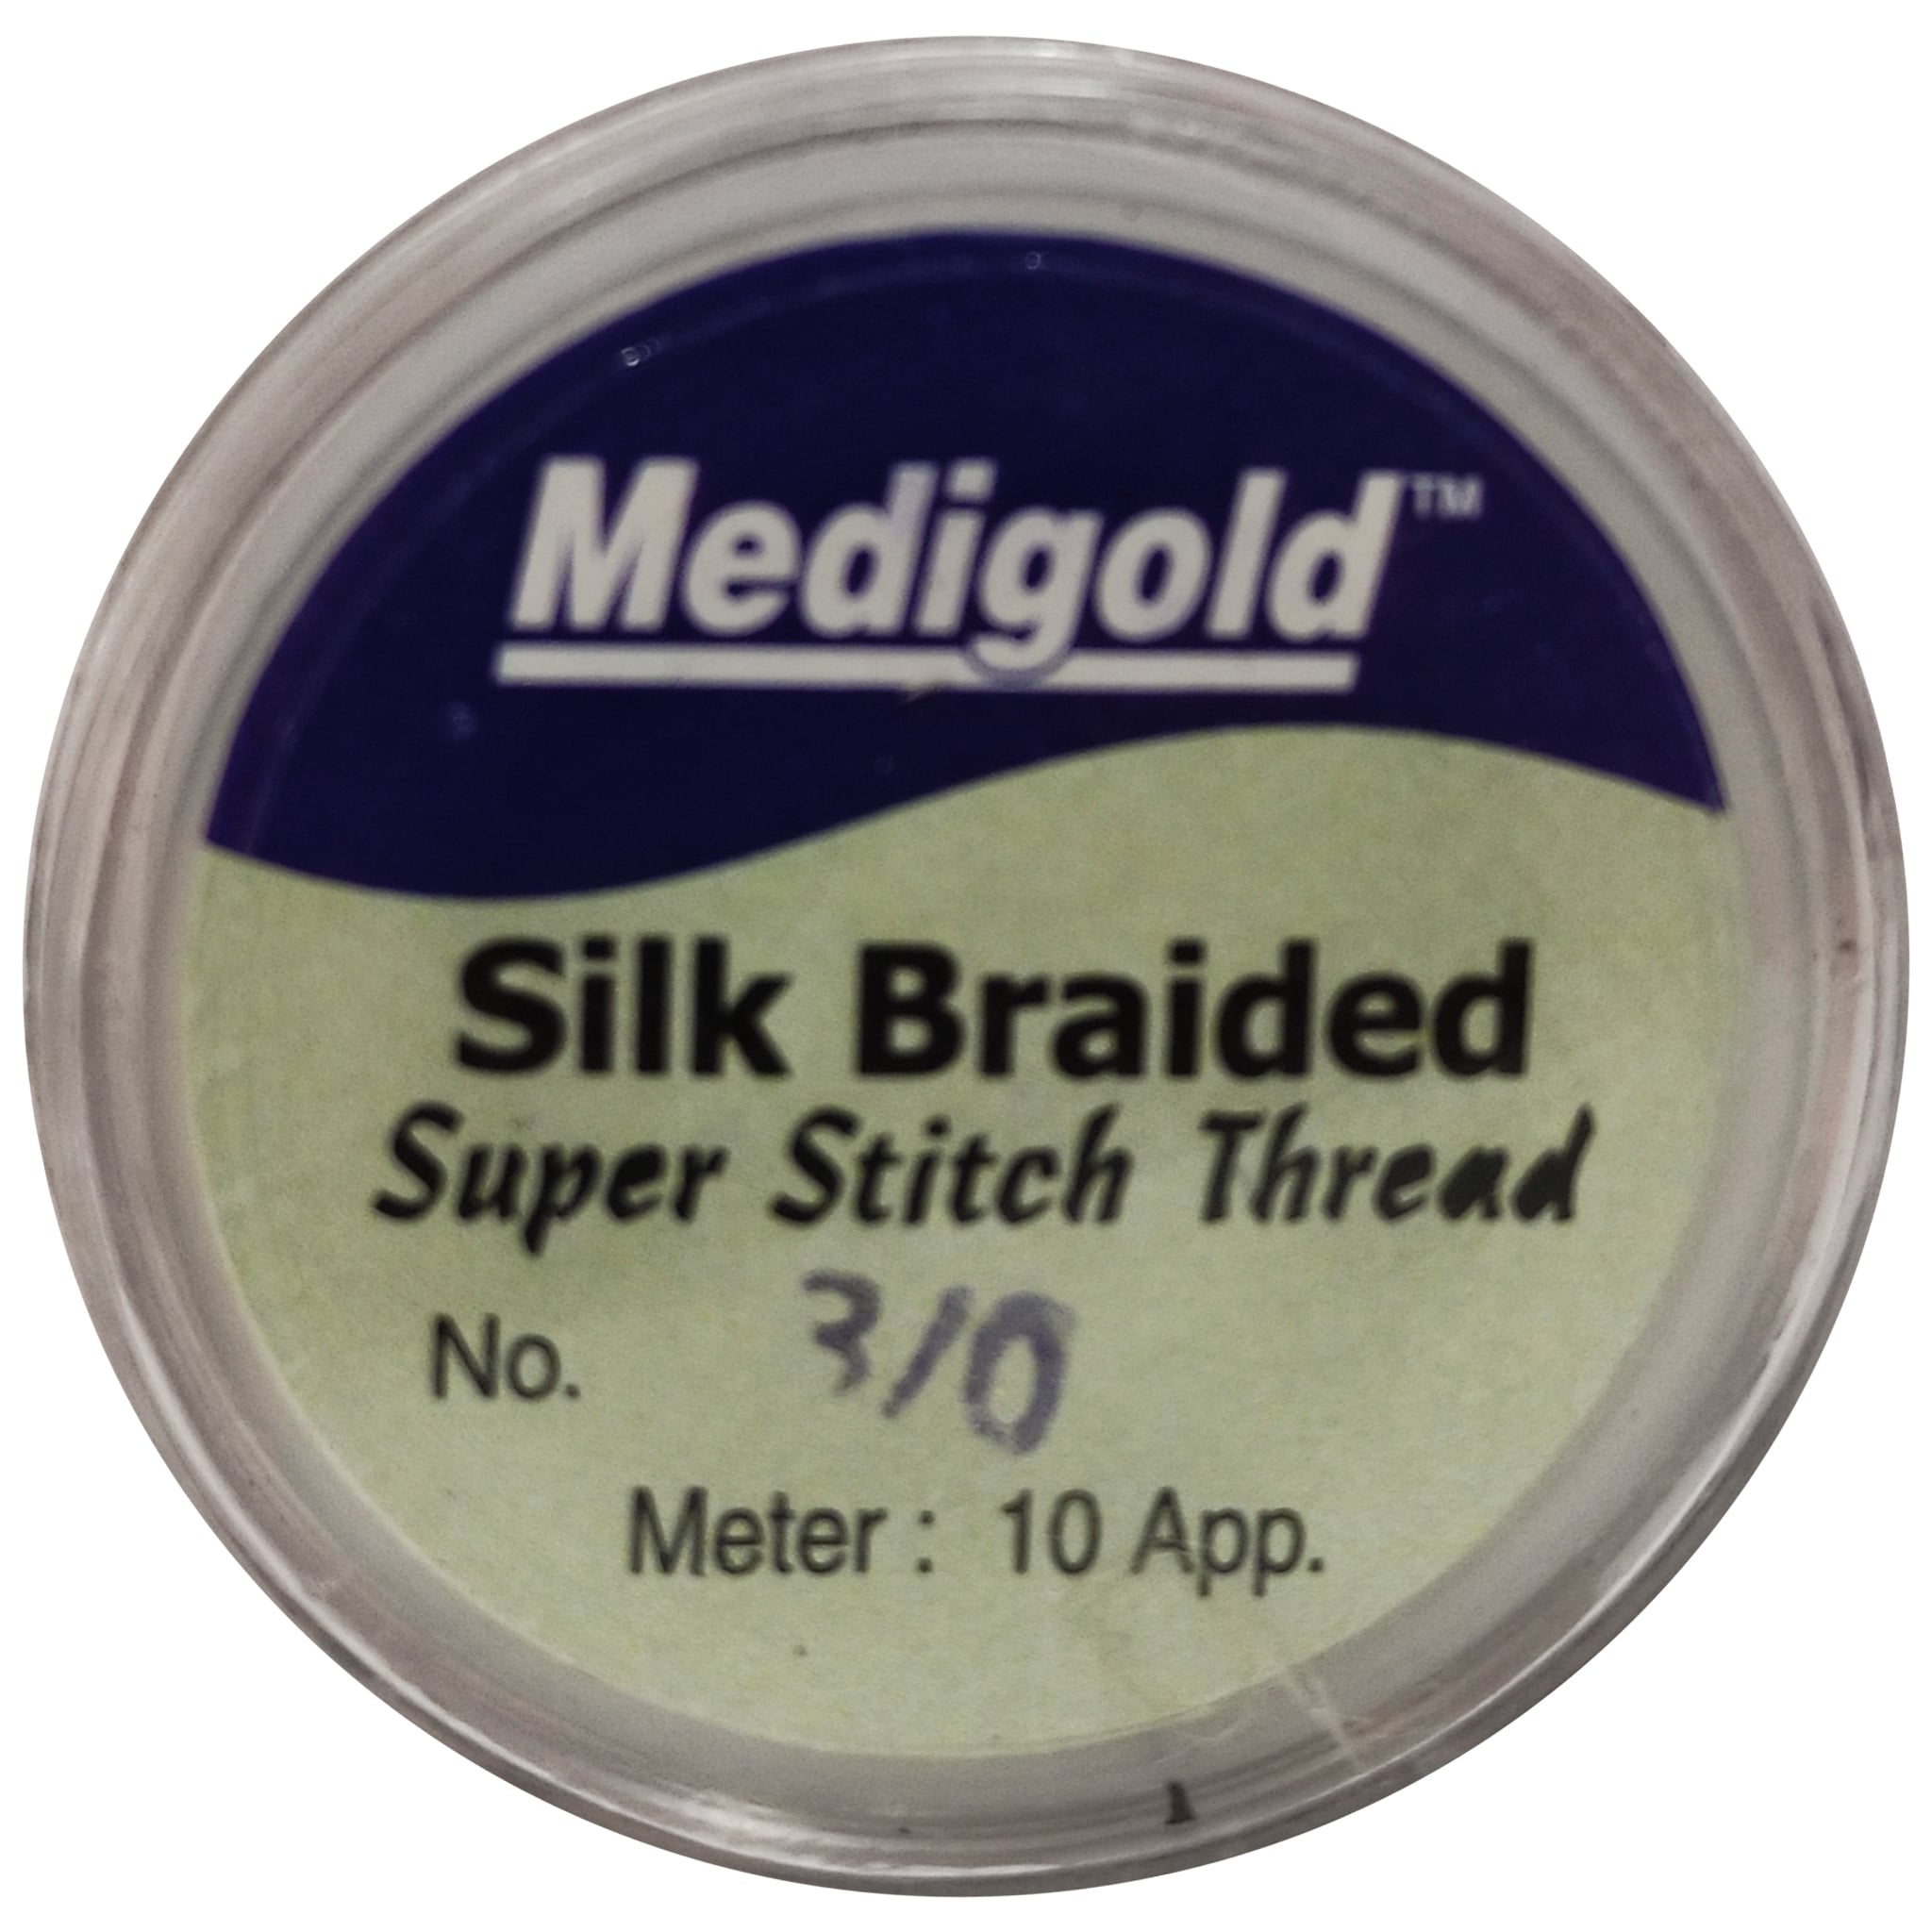 Medigold Silk Braided Super Stitch Thread 10 meter